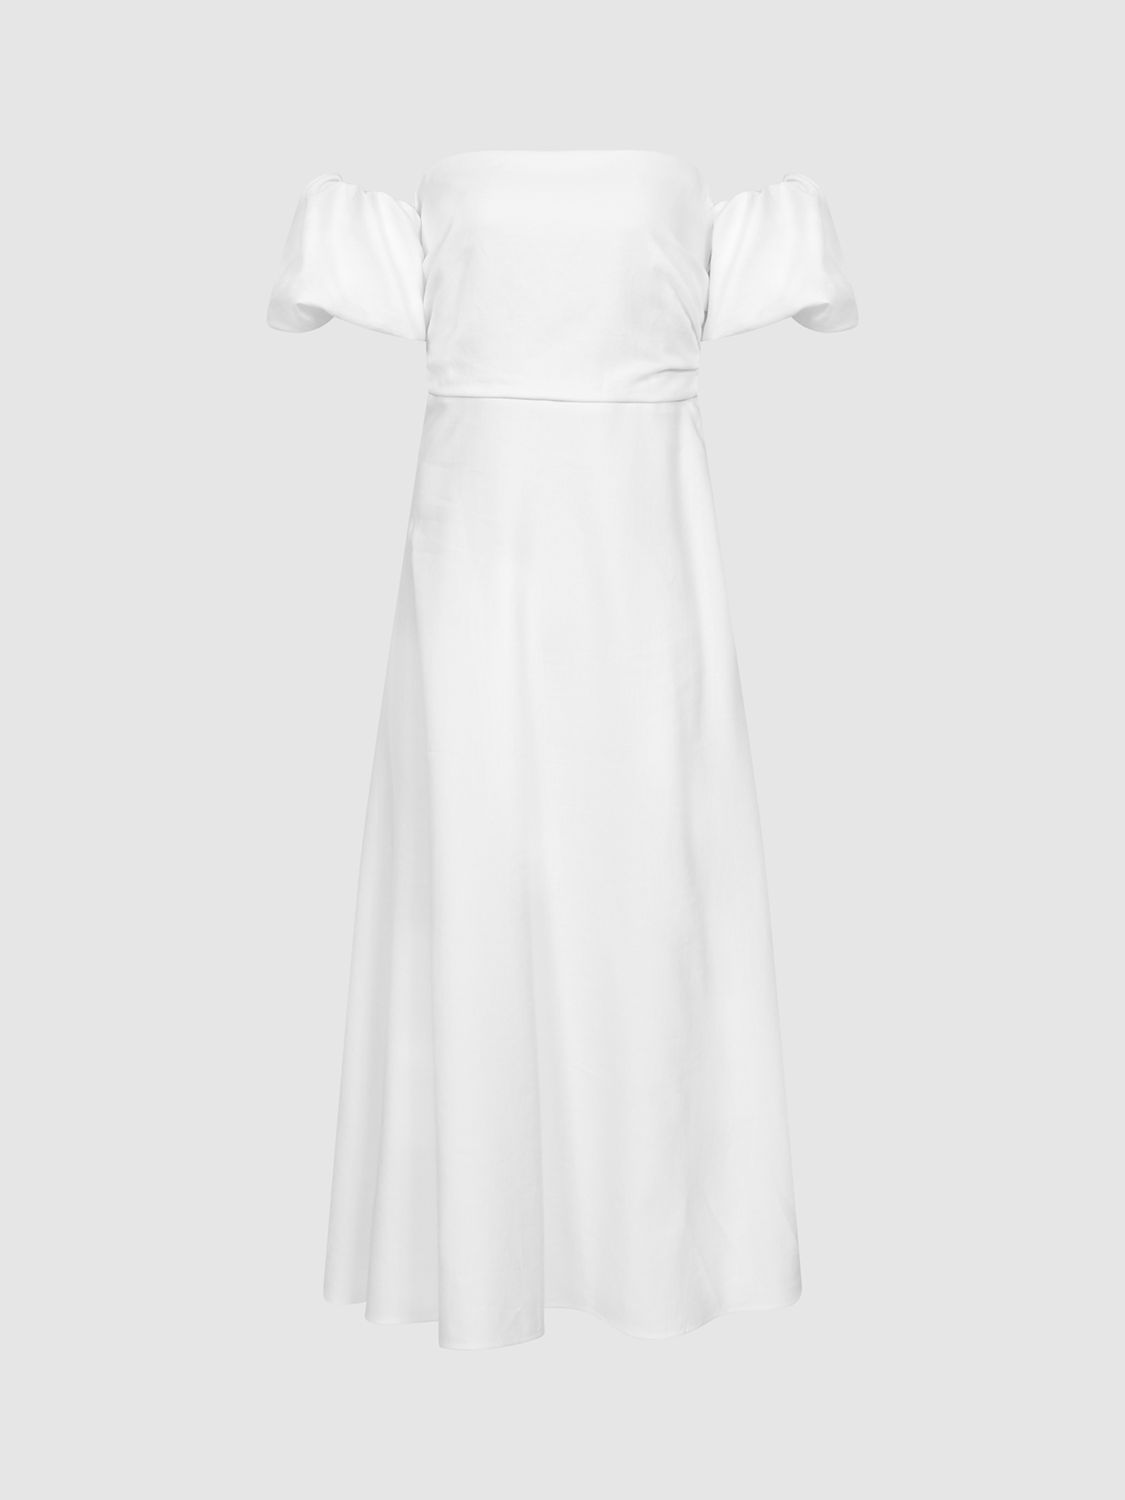 Reiss Shona Puff Sleeve Off Shoulder Midi Dress, White, 6